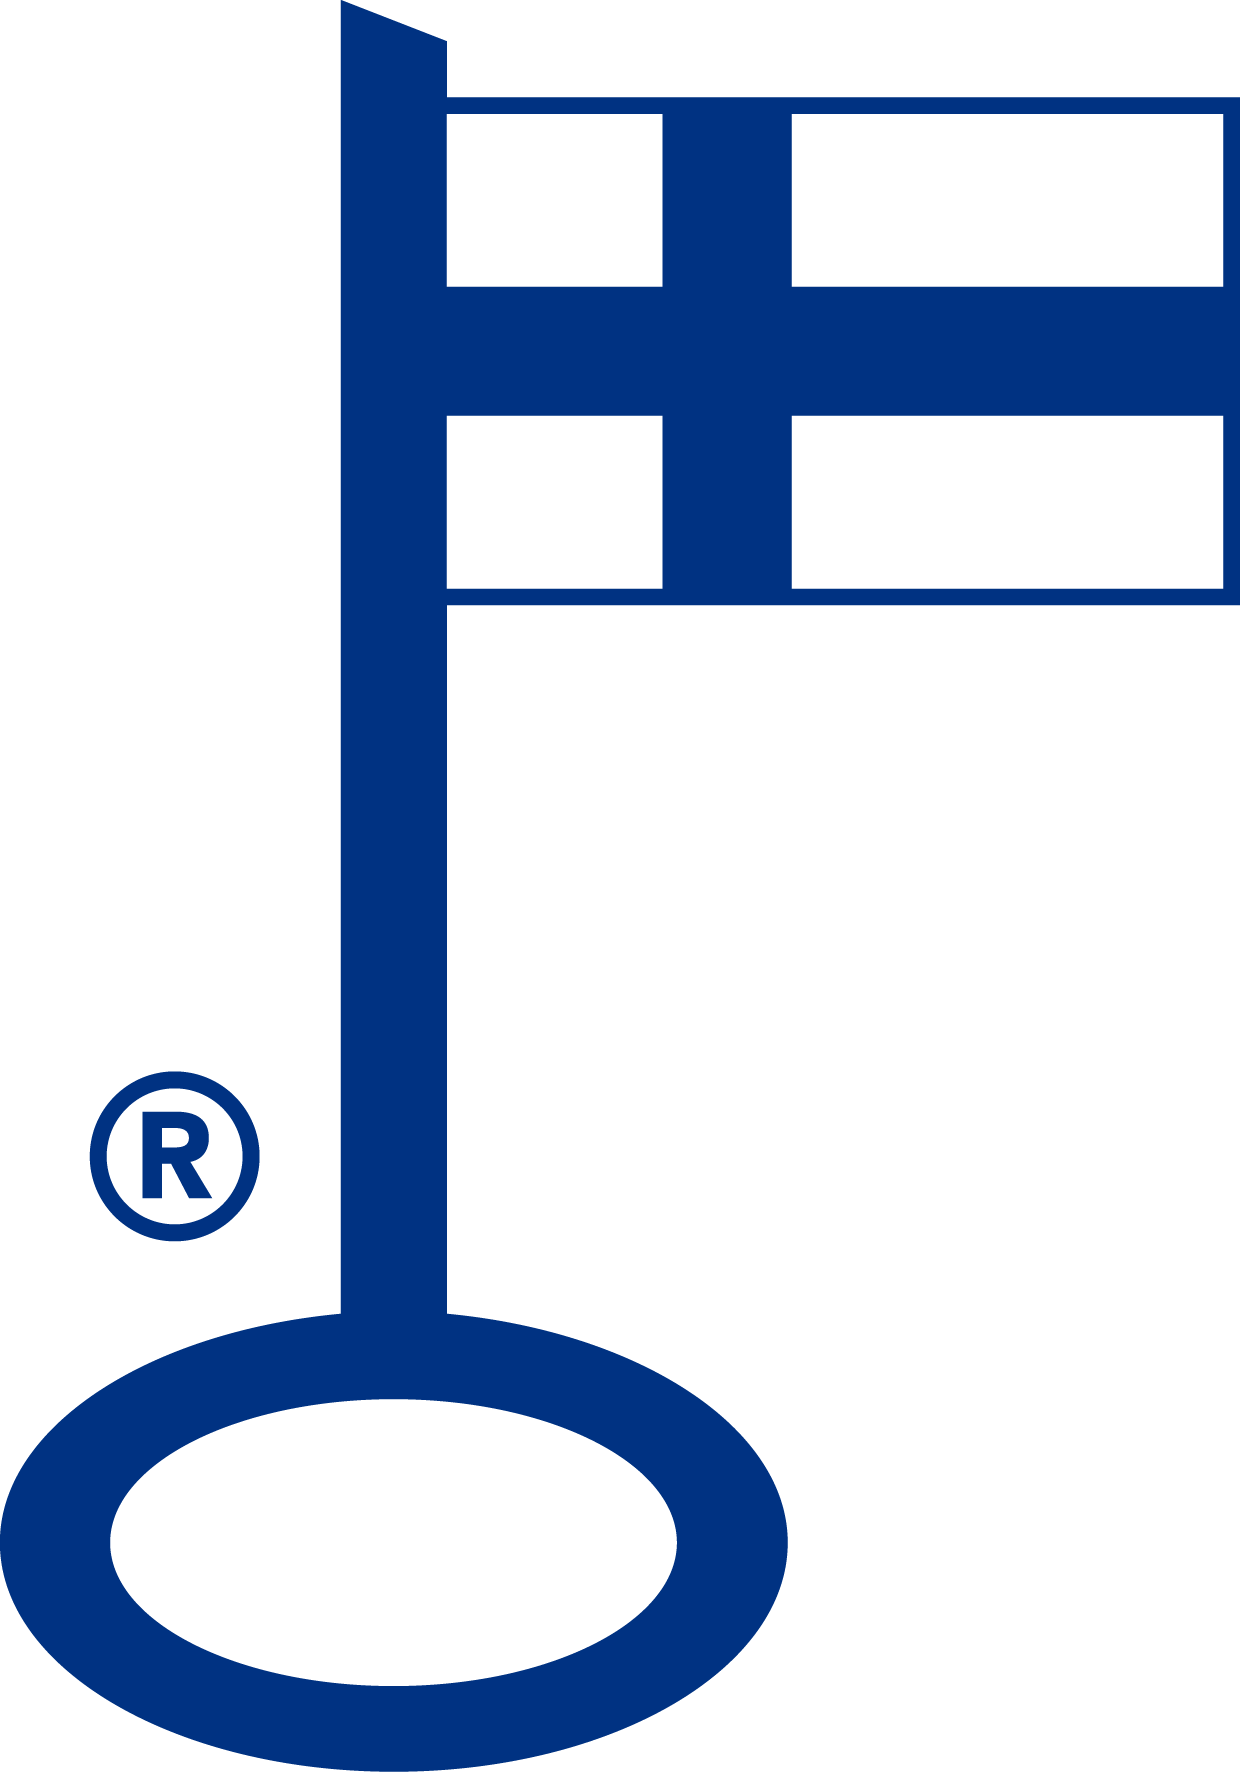 Avainlippu – Valmistettu Suomessa